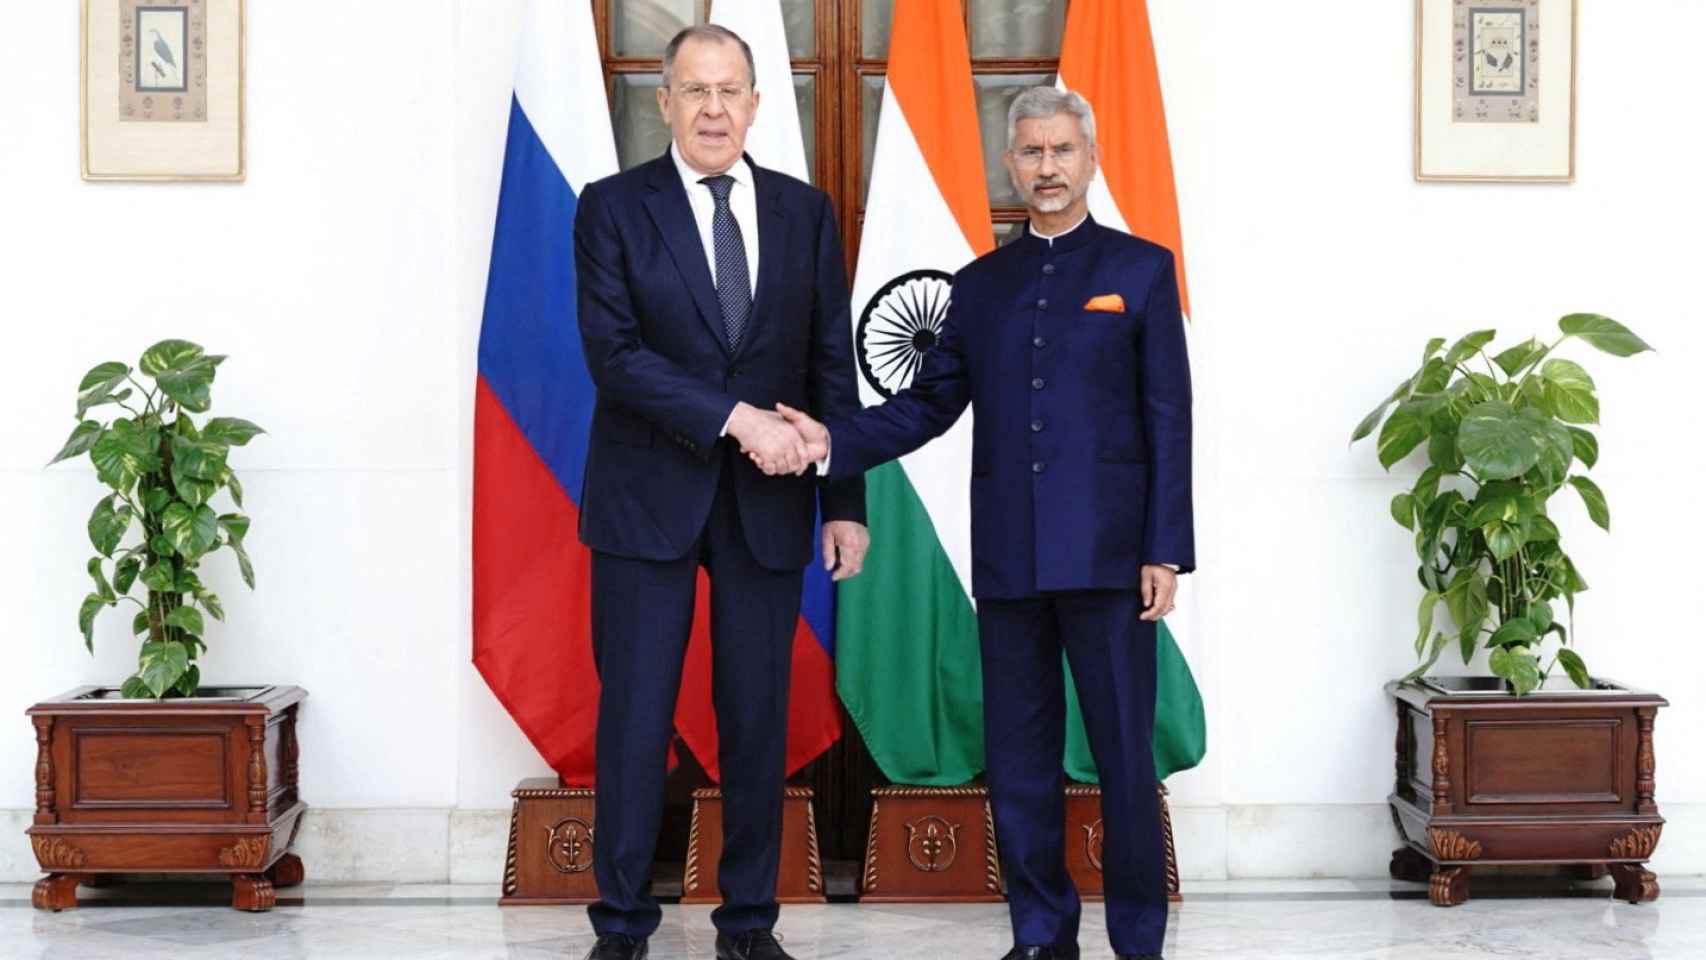 El ministro de Relaciones Exteriores de India, Jaishankar, y su homólogo ruso, Lavrov , asisten a una reunión bilateral al margen de la reunión de ministros de Relaciones Exteriores del G20, en Nueva Delhi.